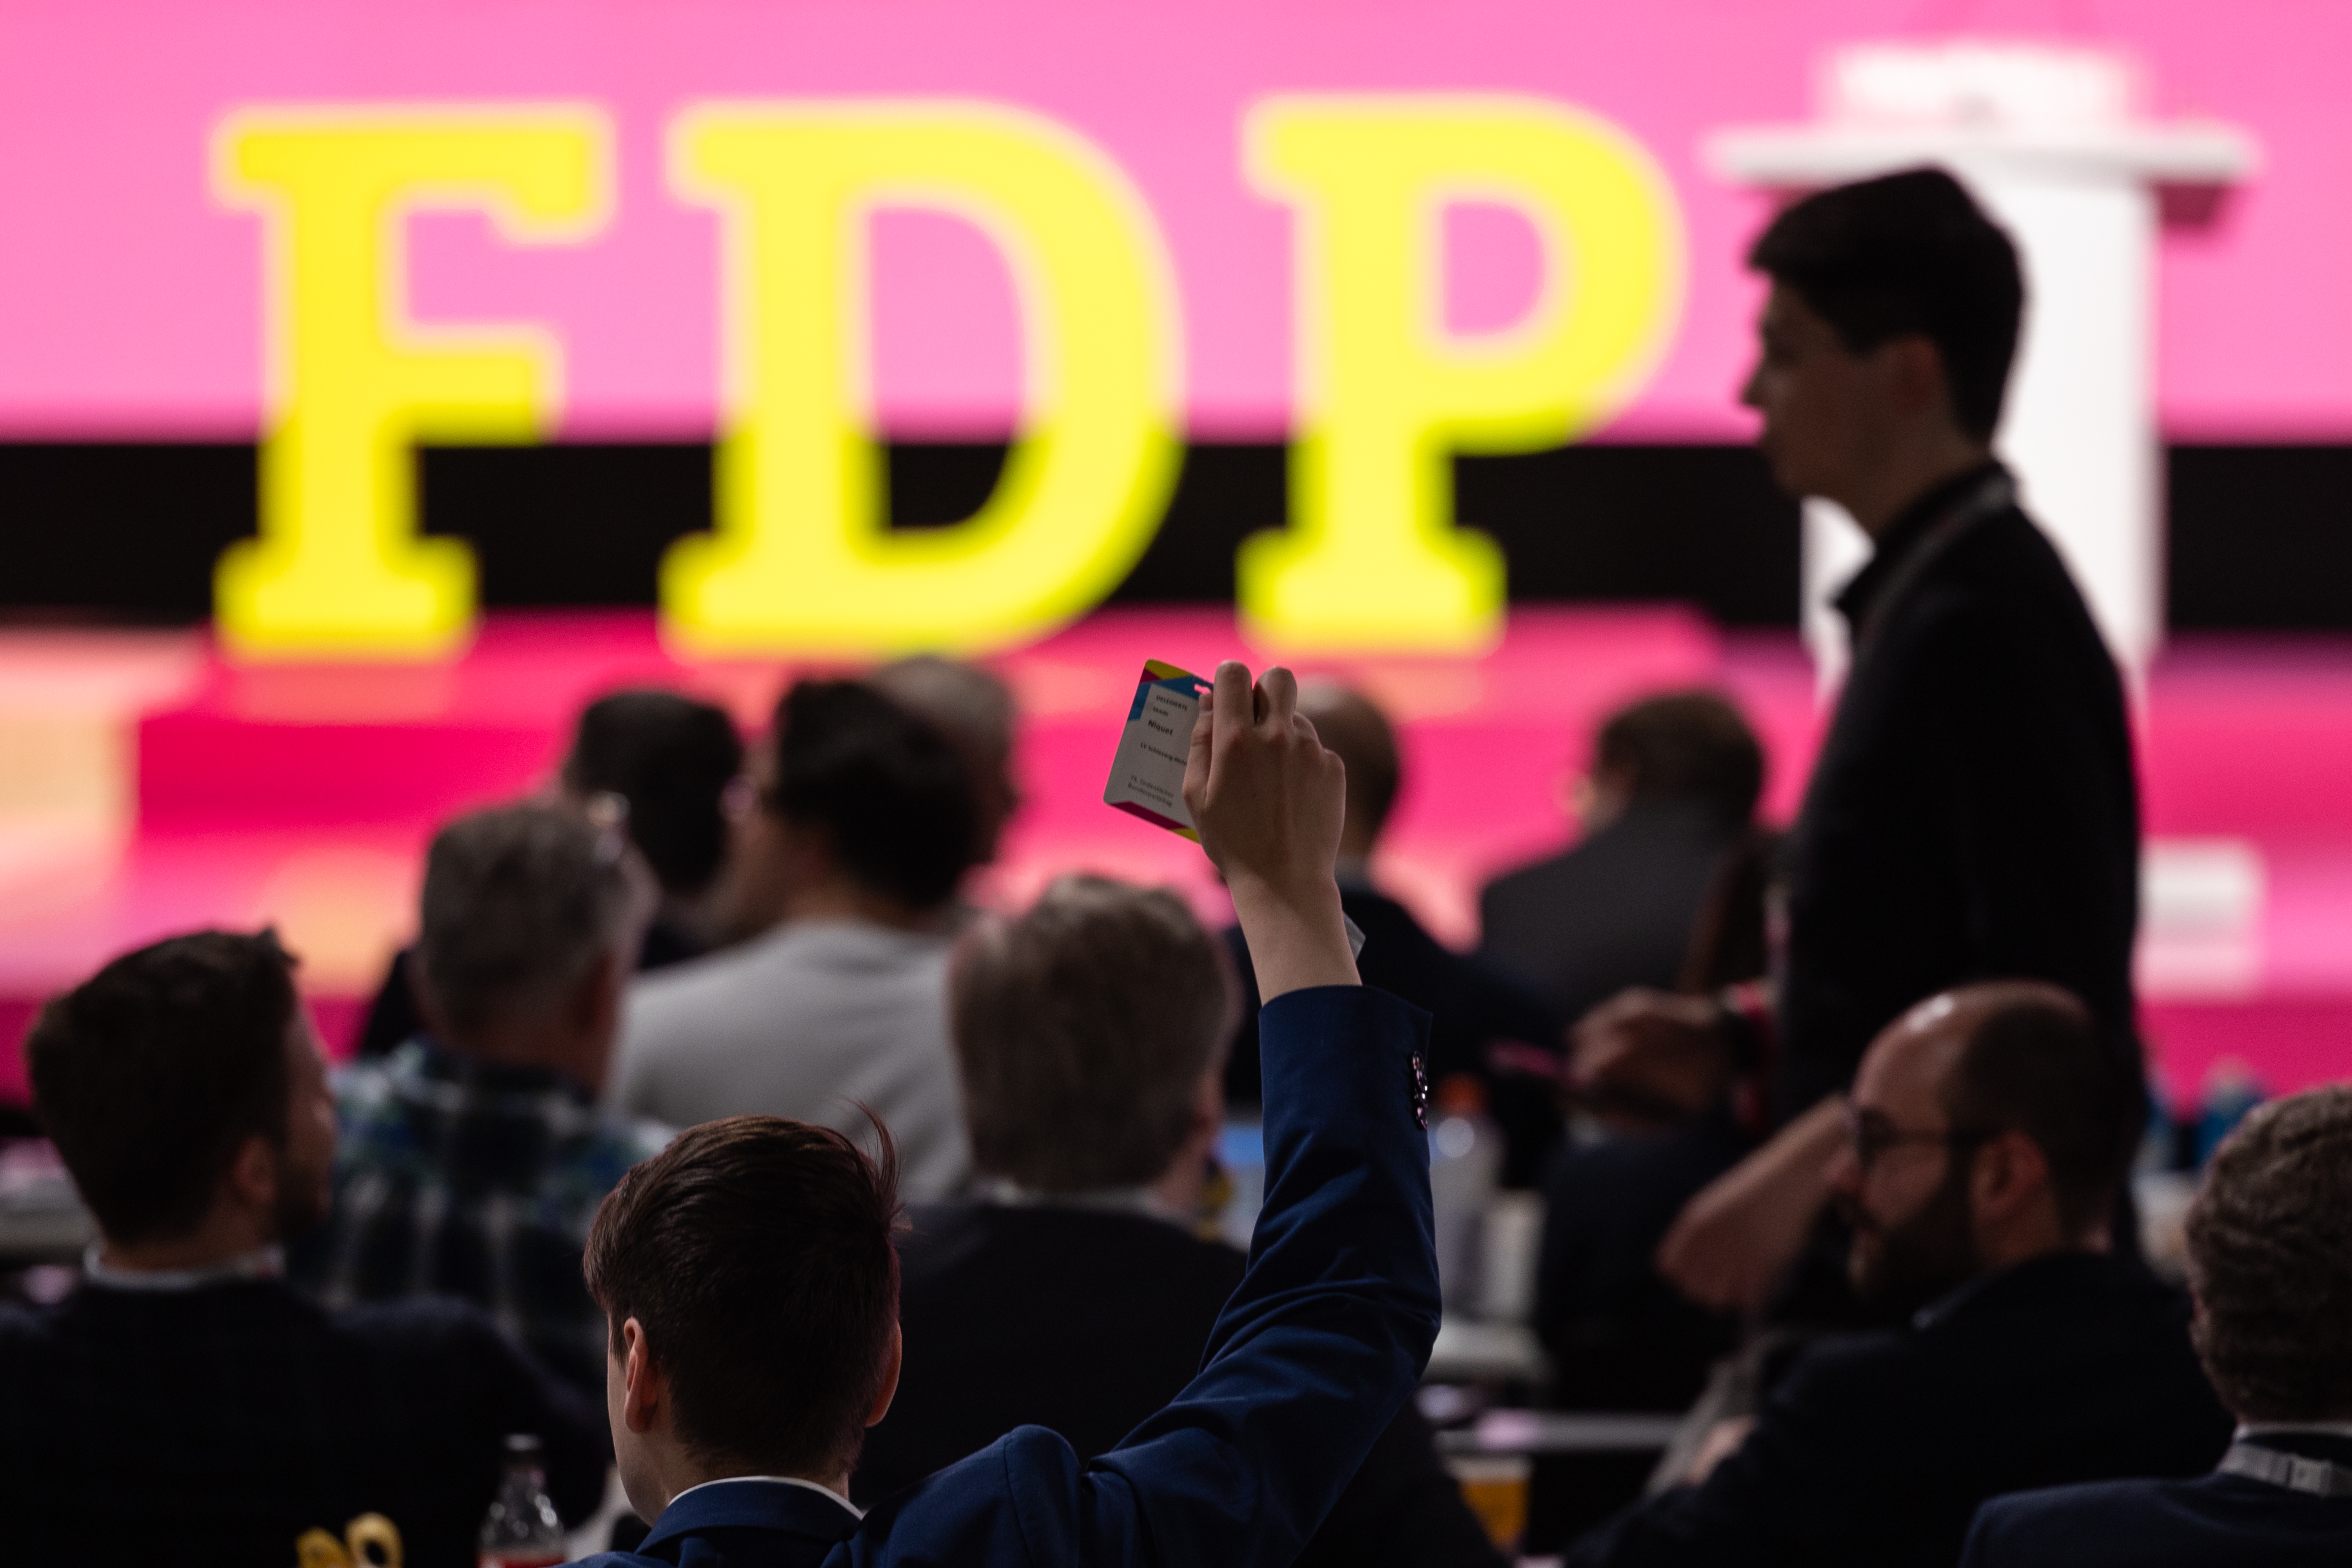 Bericht vom Parteitag der FDP in Berlin